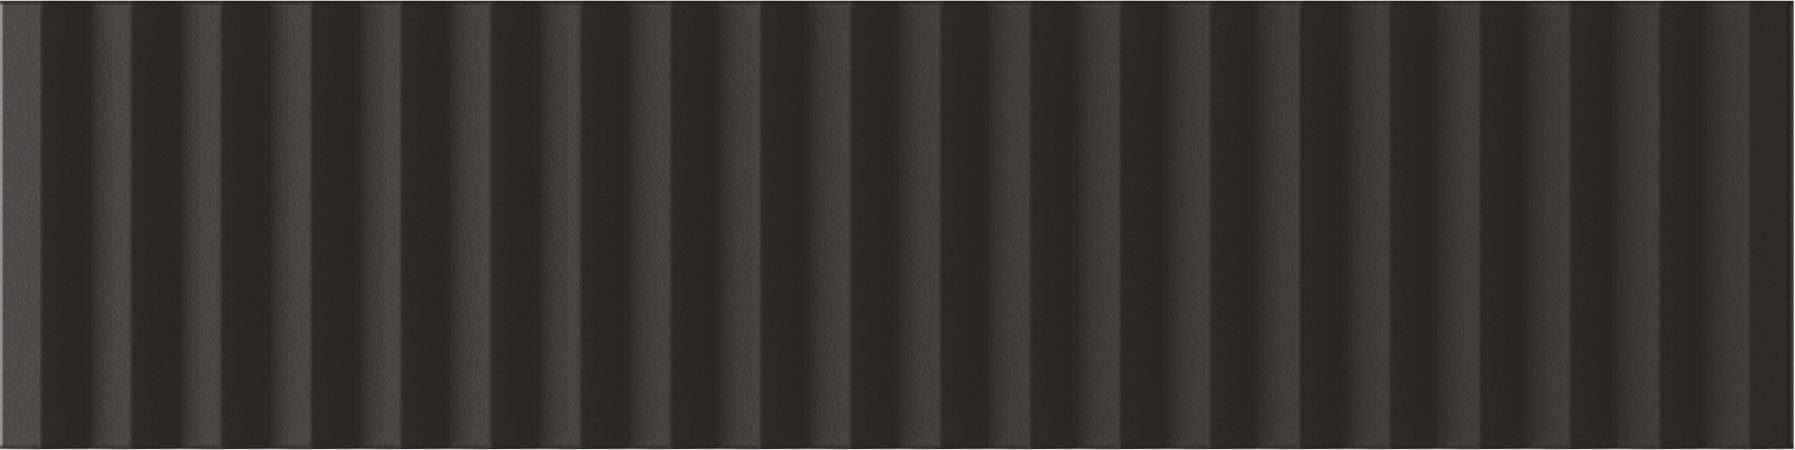 Керамическая плитка Wow Twin Peaks Med Nero 131555, цвет чёрный, поверхность матовая 3d (объёмная), под кирпич, 75x300